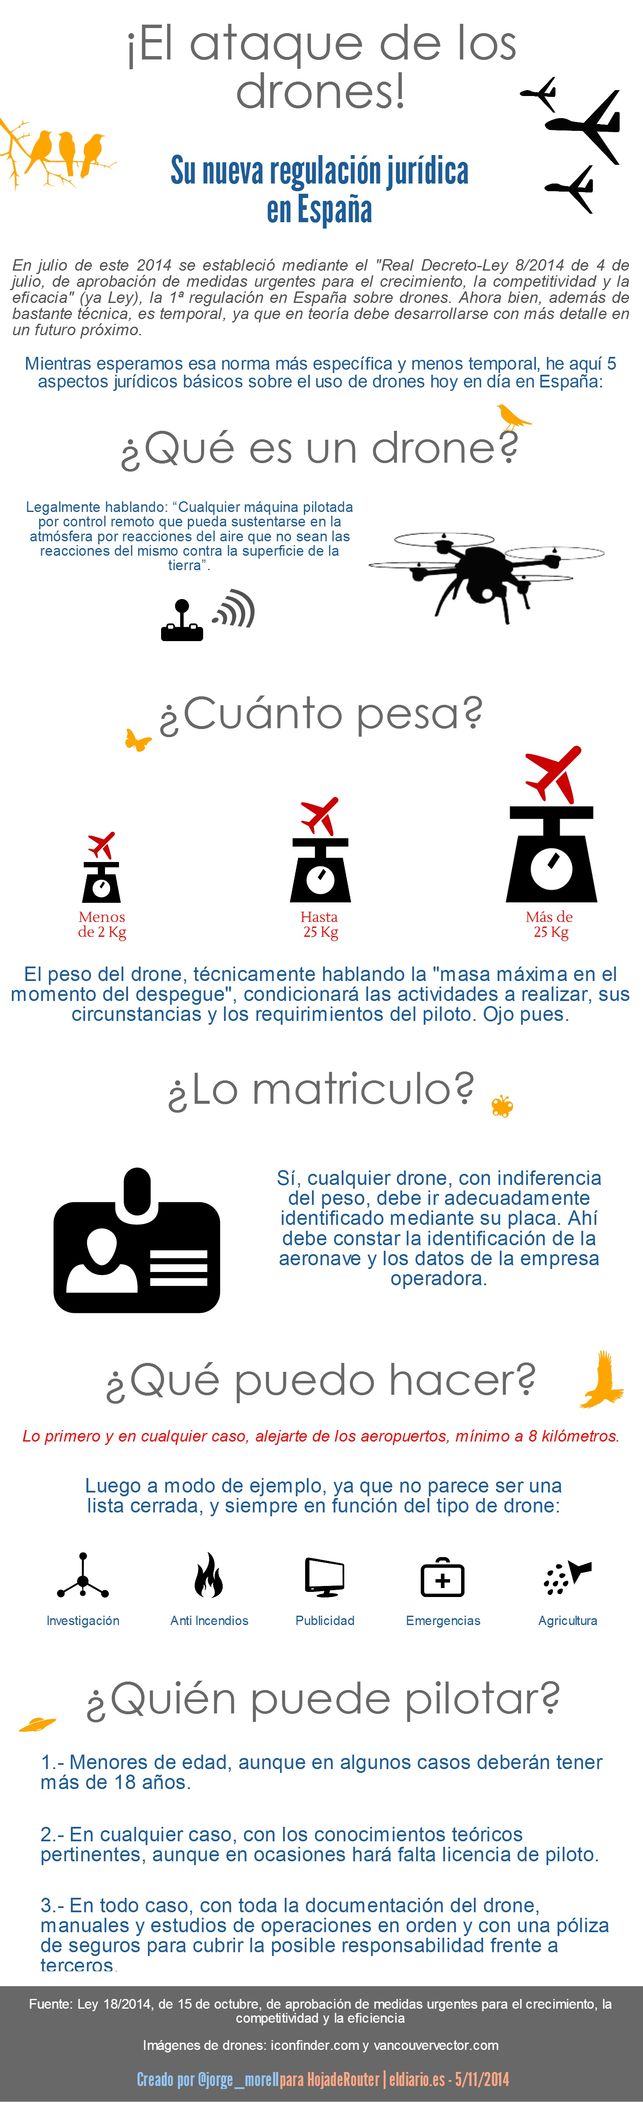 Cinco aspectos básicos en la regulación en materia de drones en España